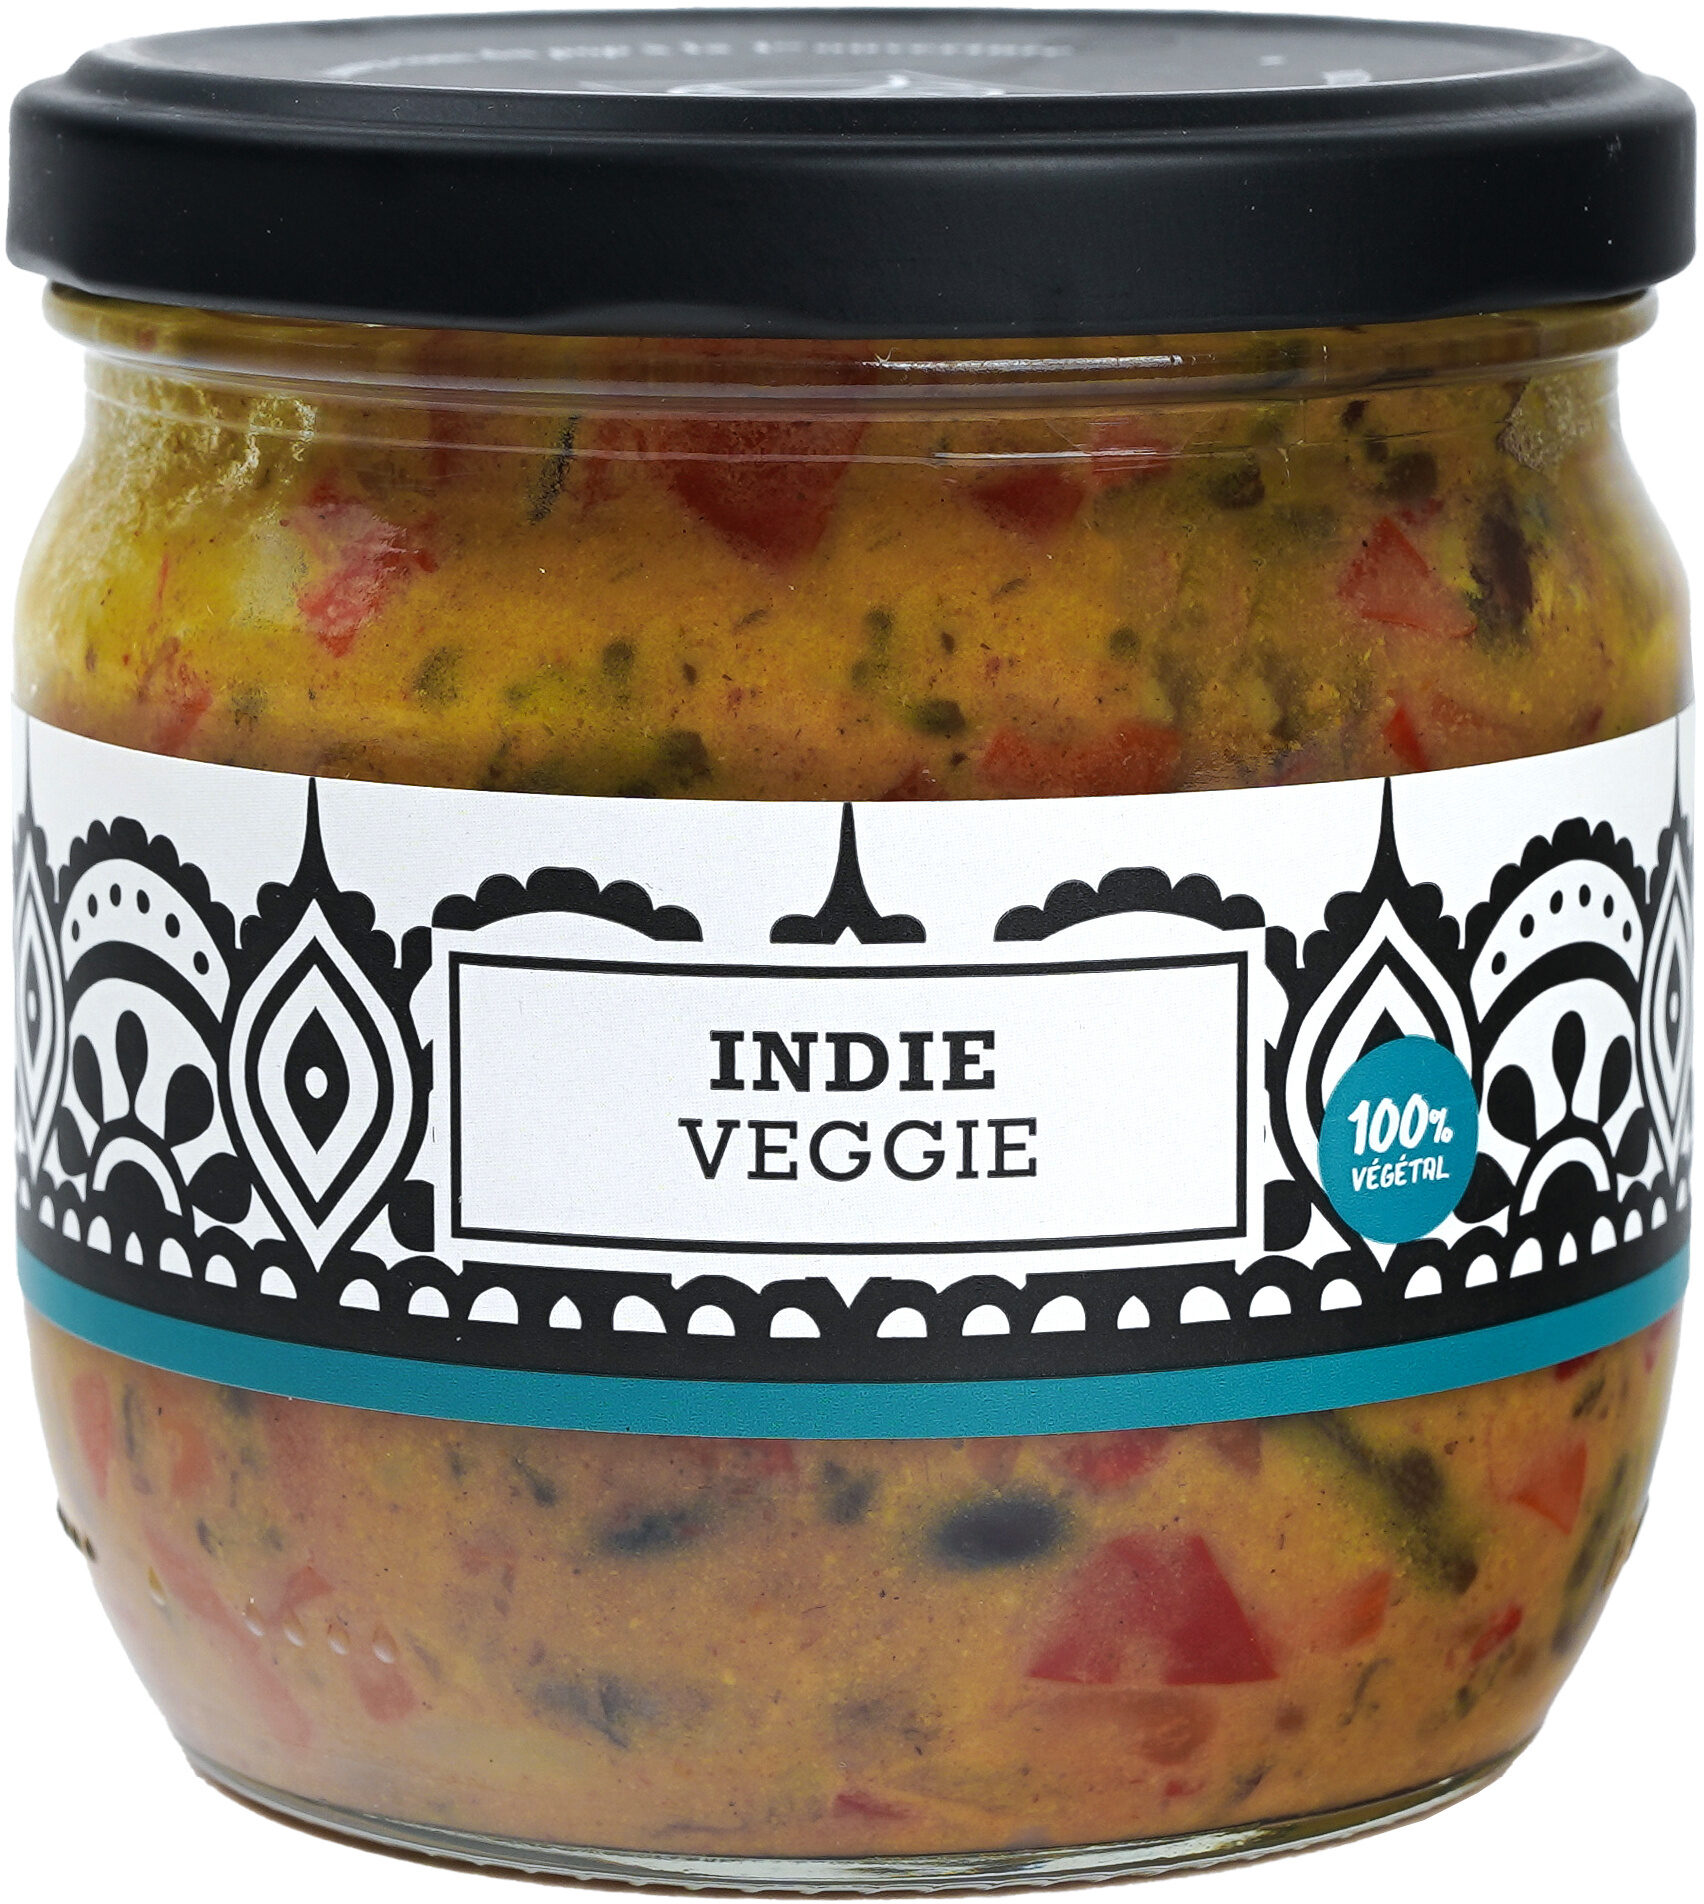 Indie veggie - Produit